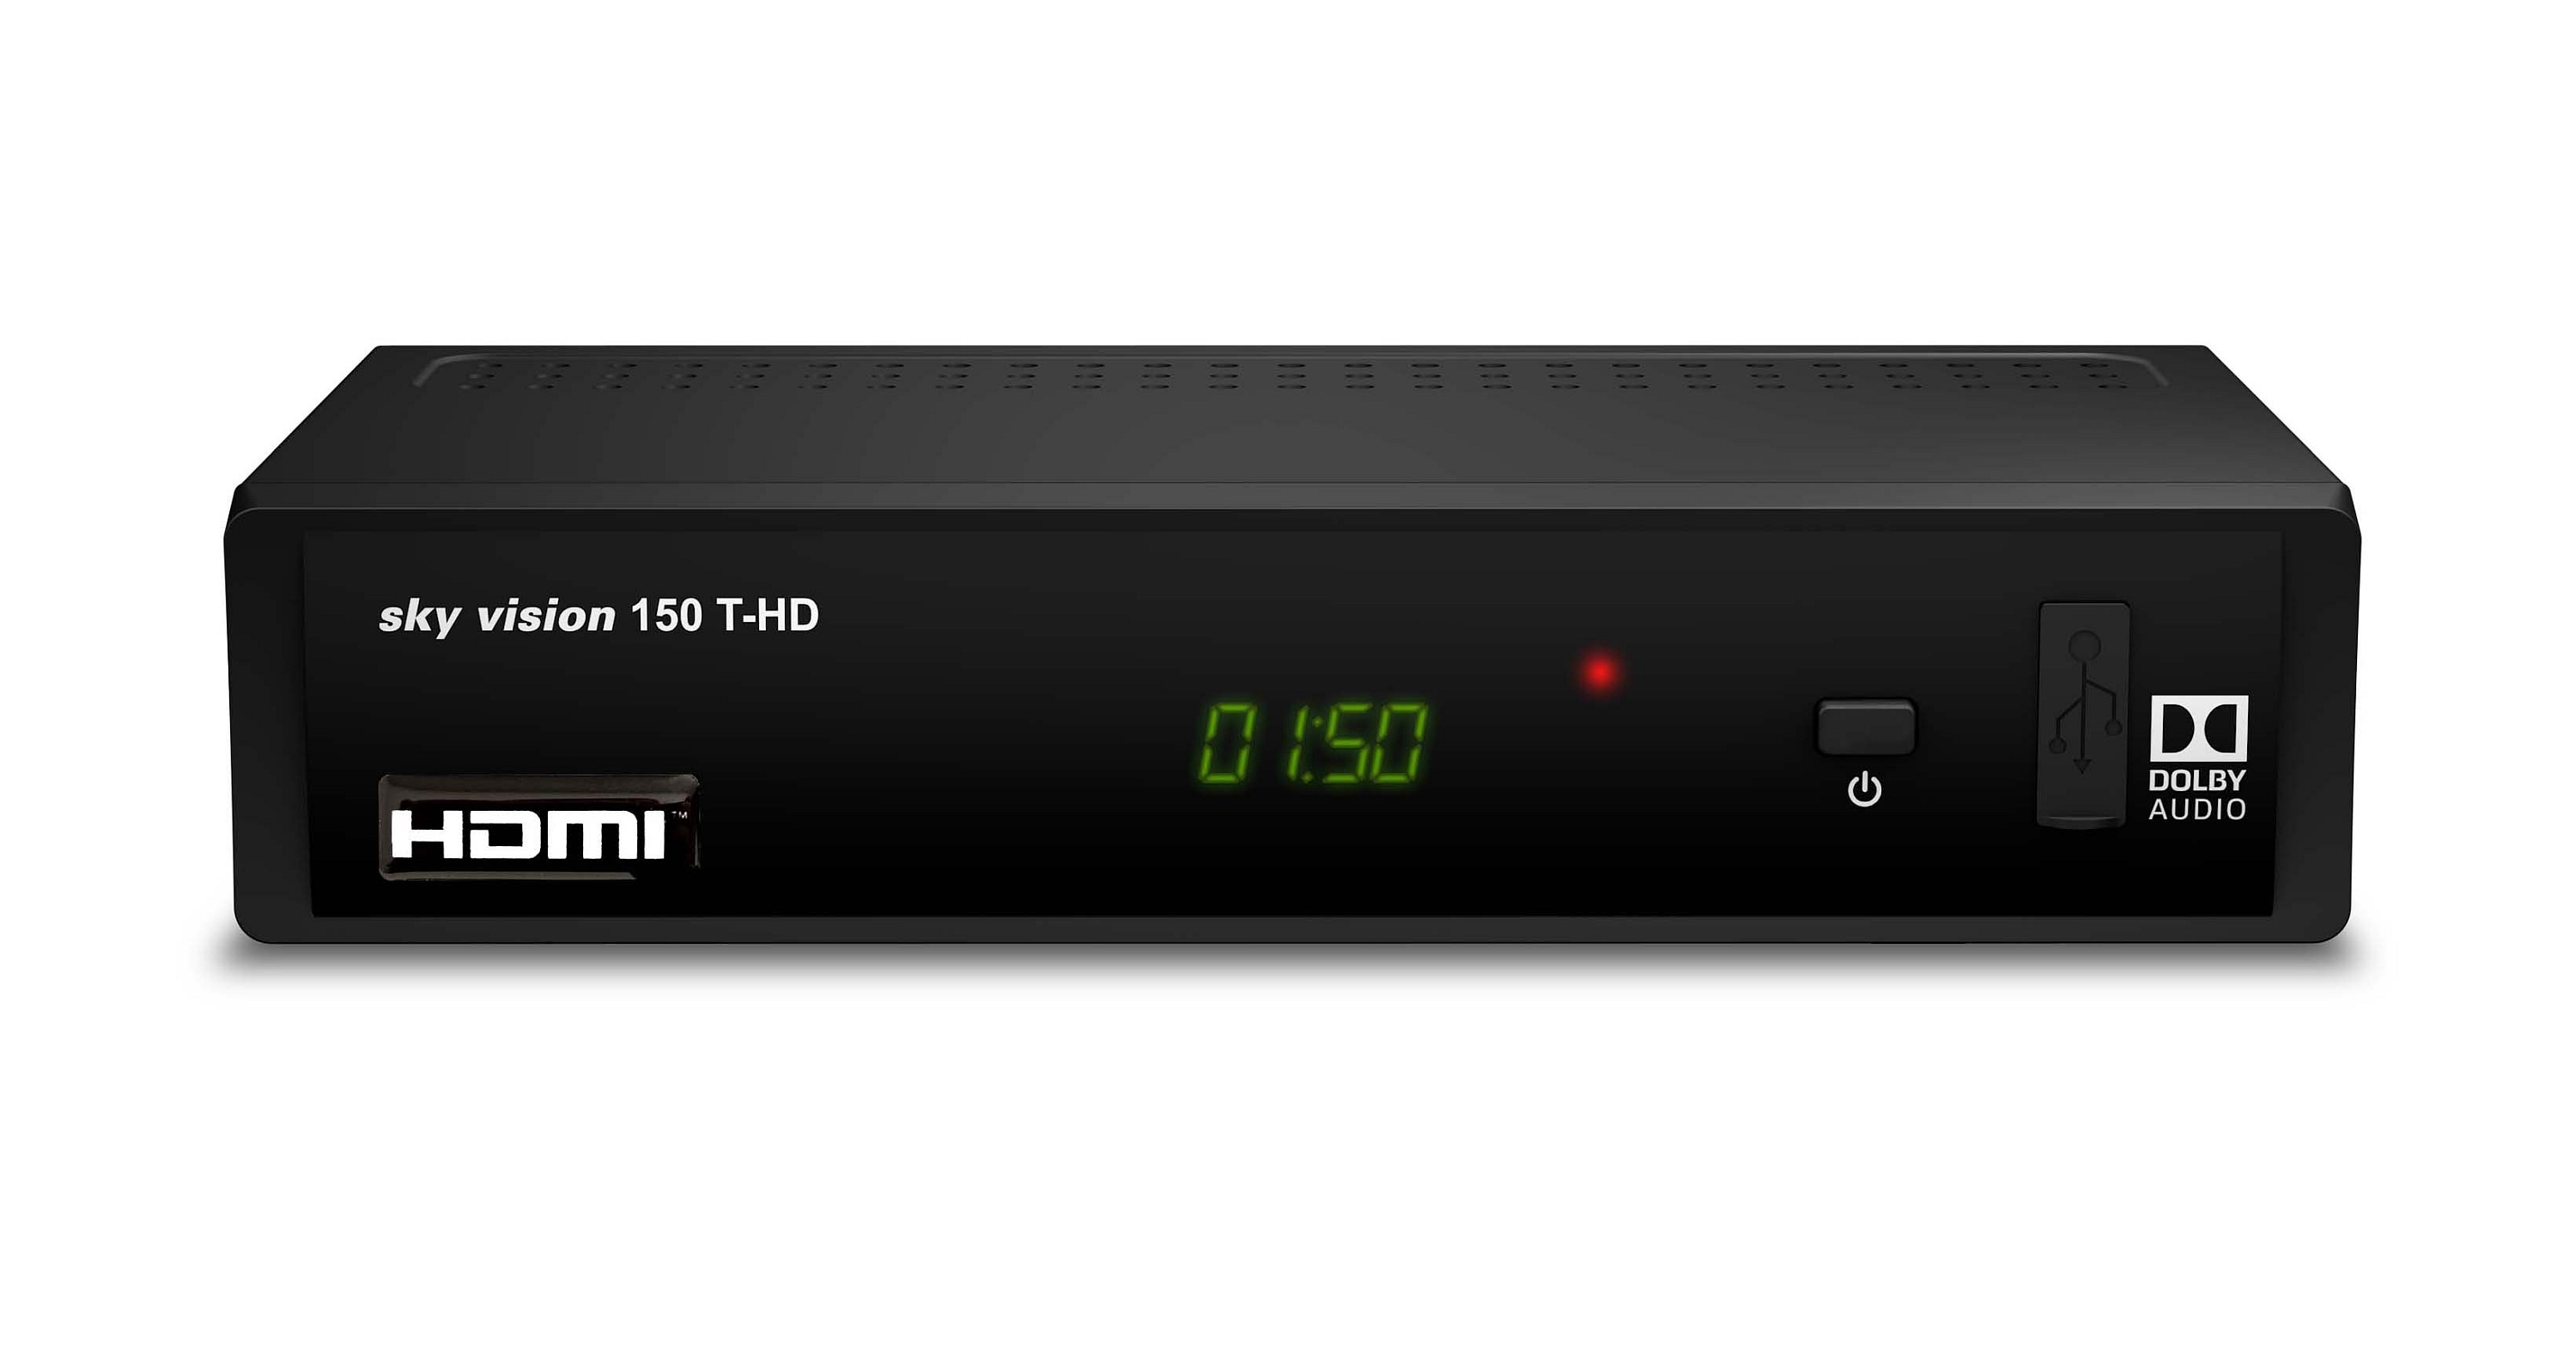 SKY VISION R9606 DVB-T-Receiver schwarz) DVB-T2 (H.265), (DVB-T